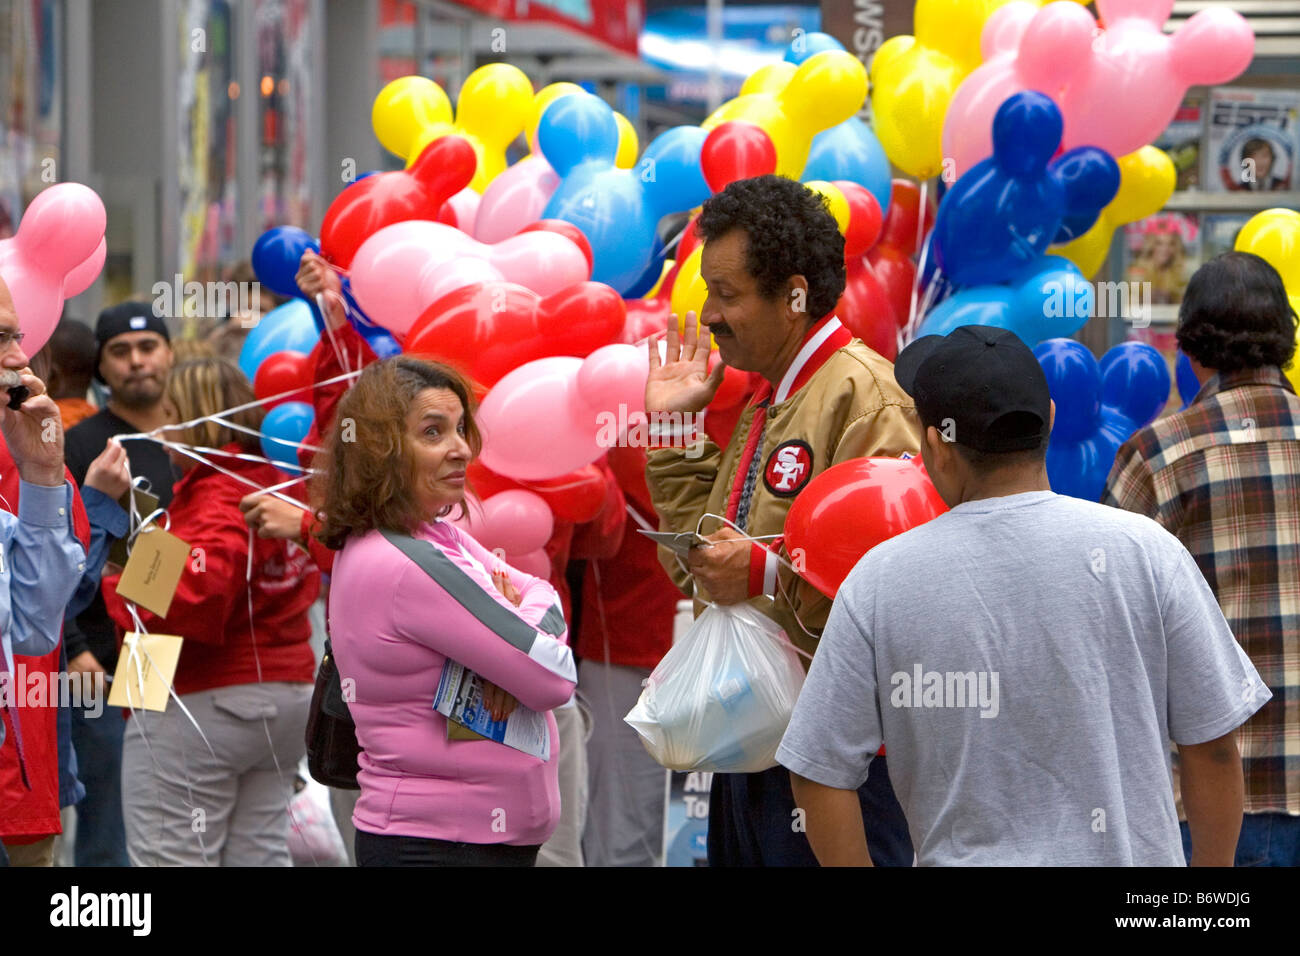 Ballons Disney promotion étant remis à Times Square Manhattan New York City New York USA Banque D'Images